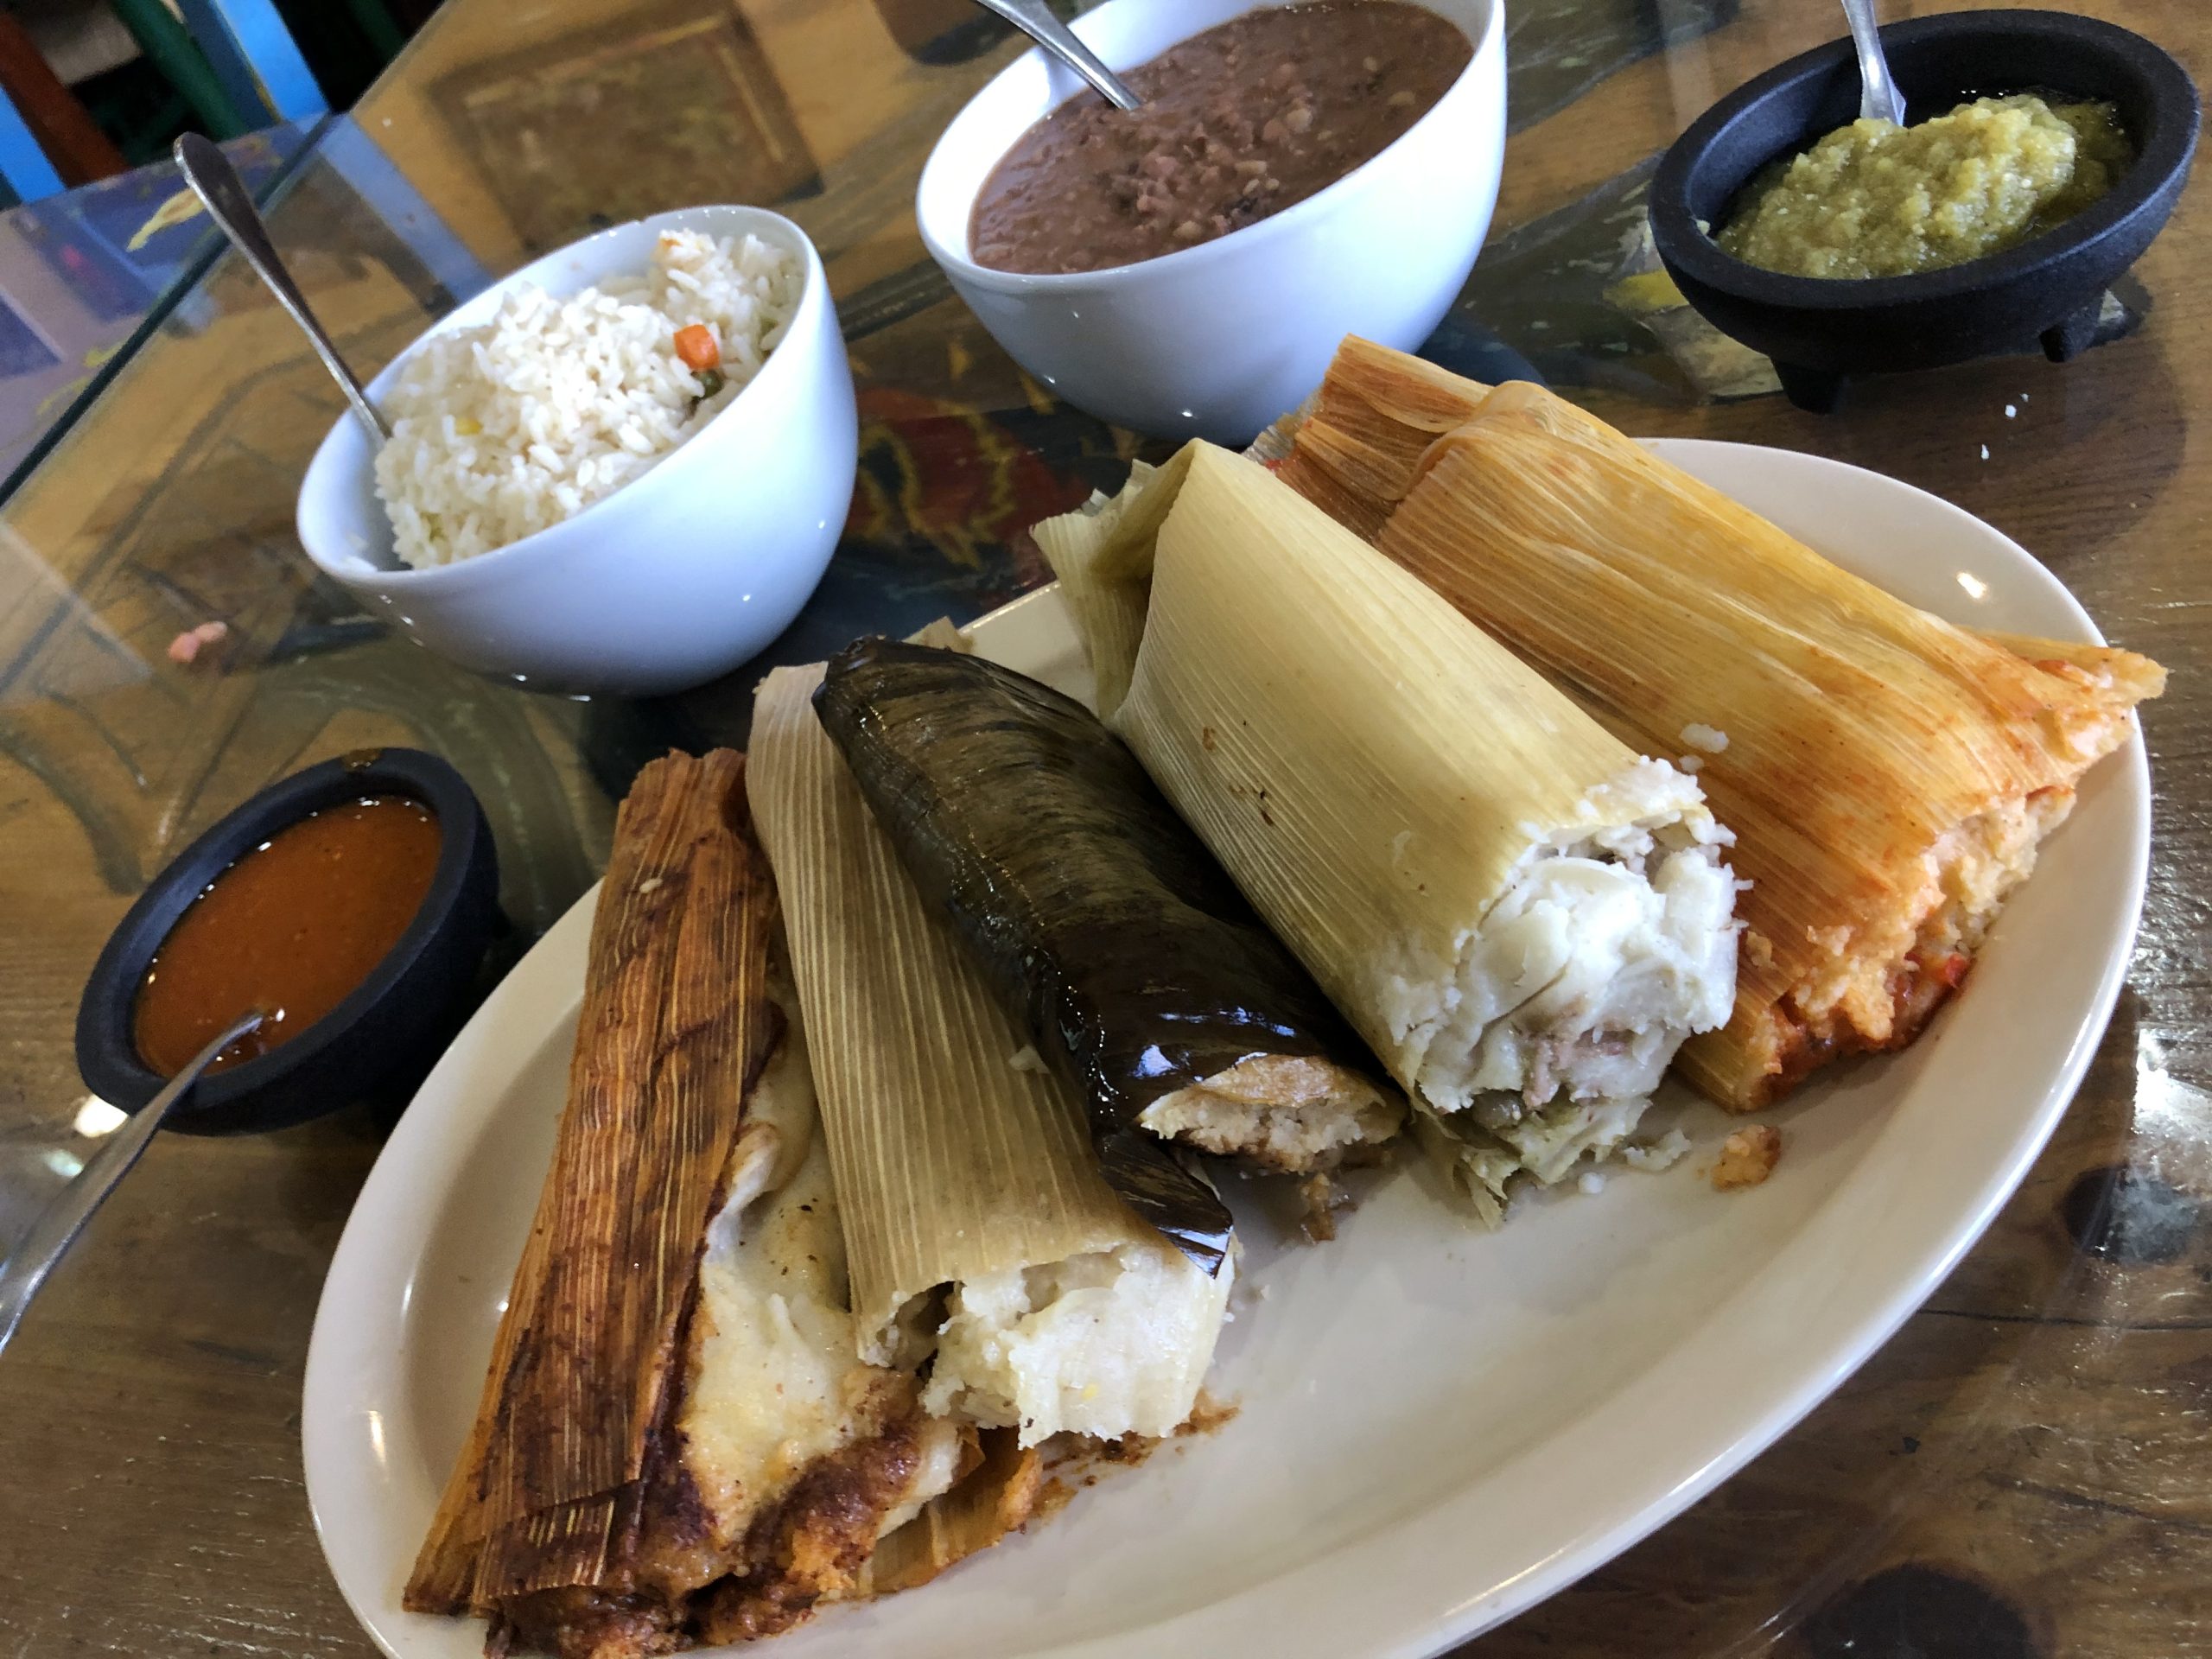 Vegan tamales from Mama's Tamales